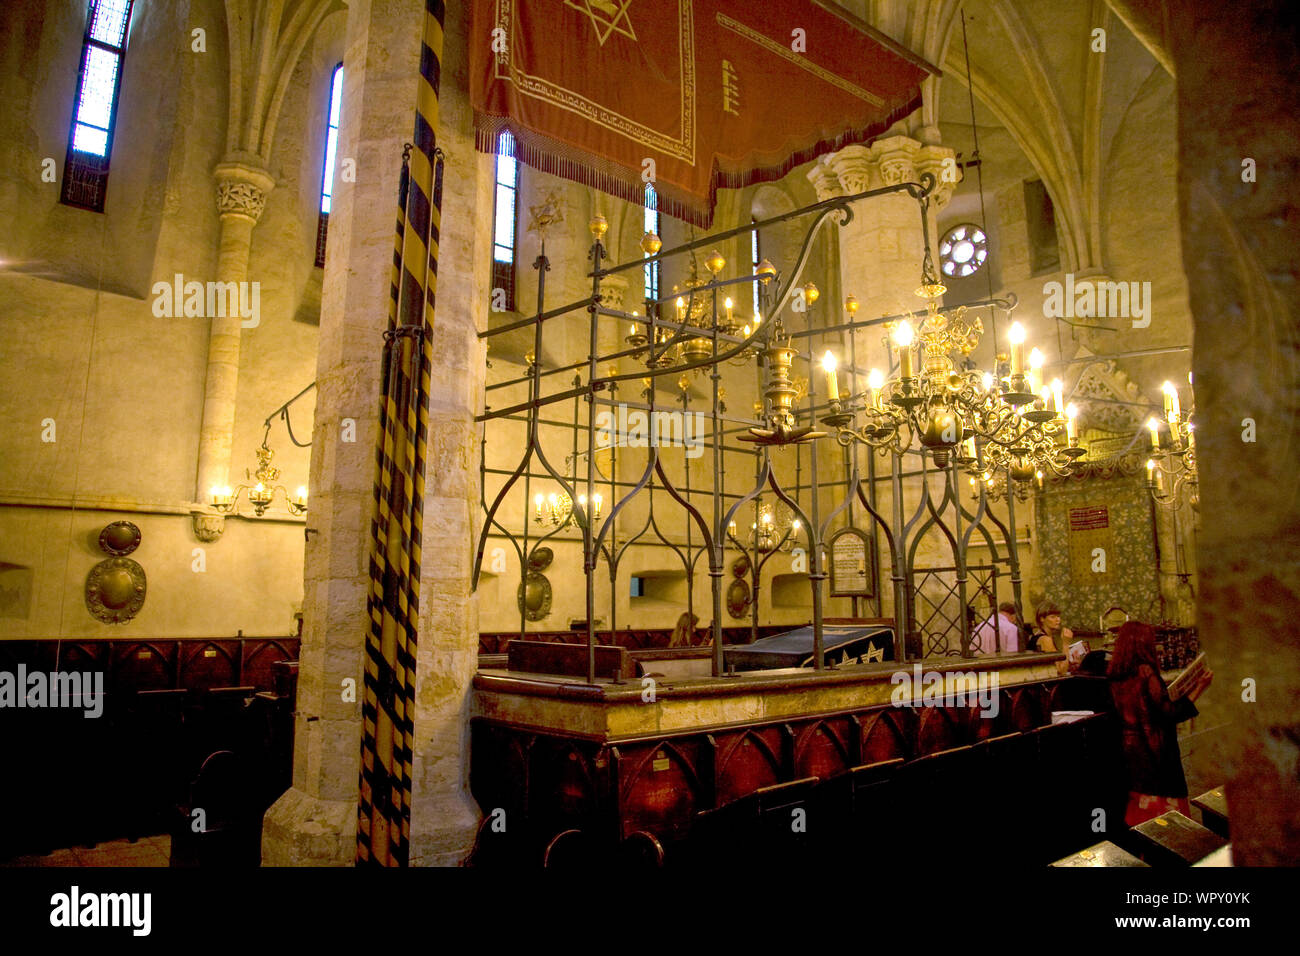 L'interno del XIII secolo Sinagoga Vecchia-Nuova l'Europa è il lavoro più antica sinagoga. Praga Repubblica Ceca. Foto Stock